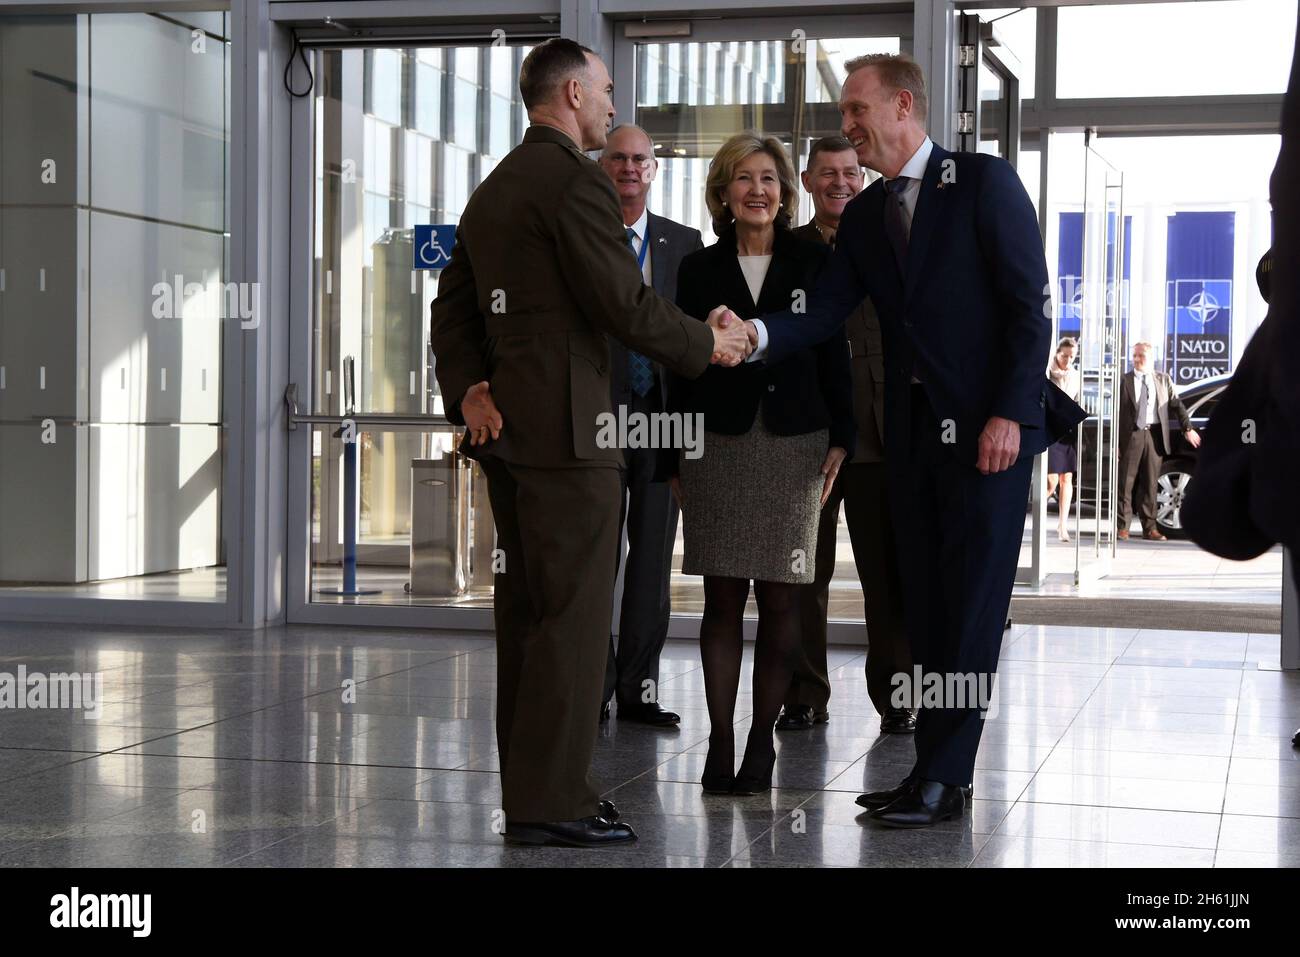 Reportaje: El Secretario de Defensa interino de los Estados Unidos, Patrick M. Shanahan, saluda al Teniente General del Cuerpo de Infantería de Marina John K. Love, el alto representante militar ante la OTAN, en la sede de la OTAN, al inicio de un ministerio de defensa de dos días, Bruselas, Bélgica, 13 de febrero de 2018. Foto de stock